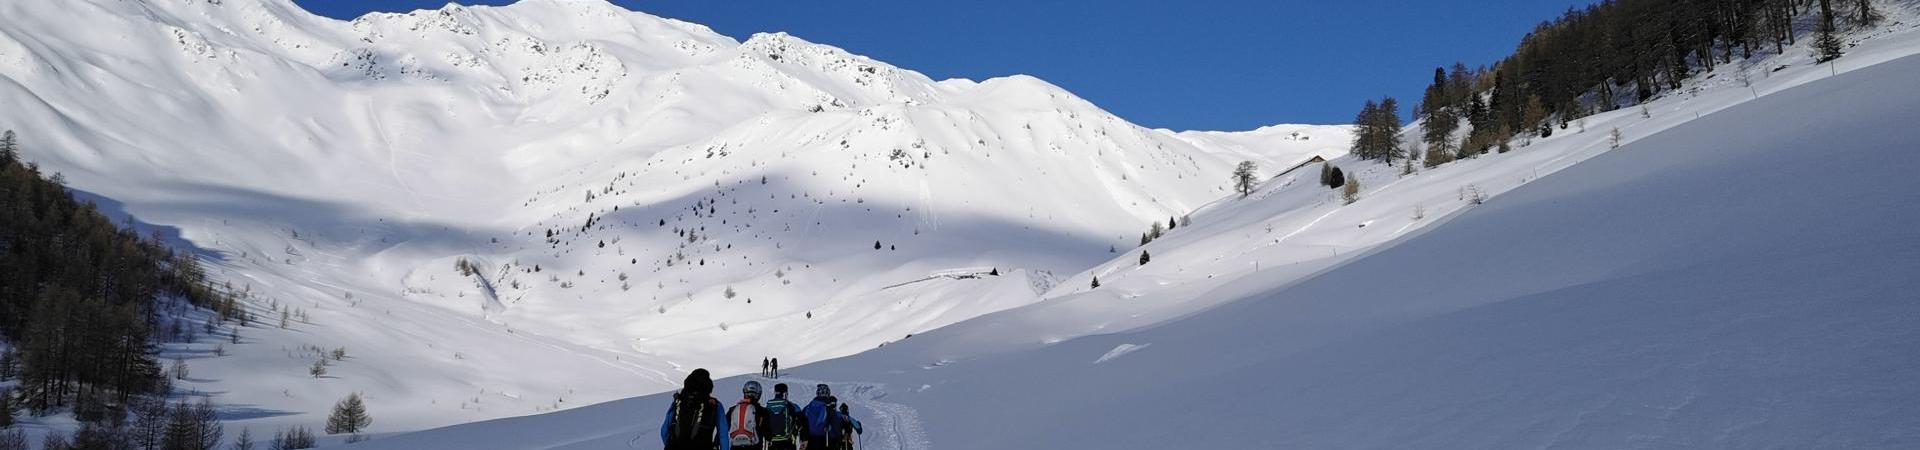 skitouren_ortlergebiet_op[2]